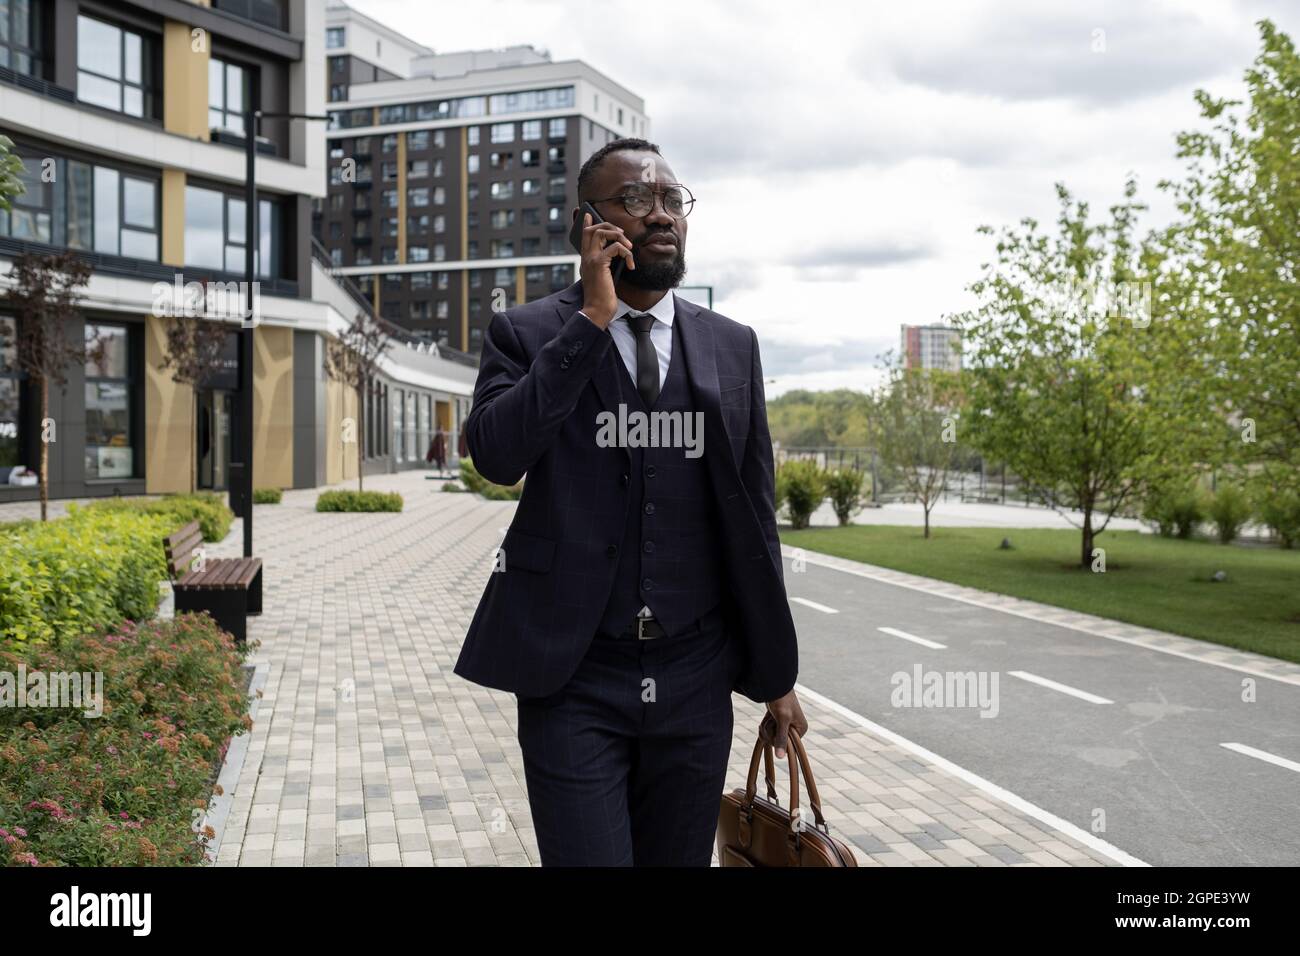 Banchiere occupato di etnia africana che parla al telefono cellulare in ambiente urbano Foto Stock